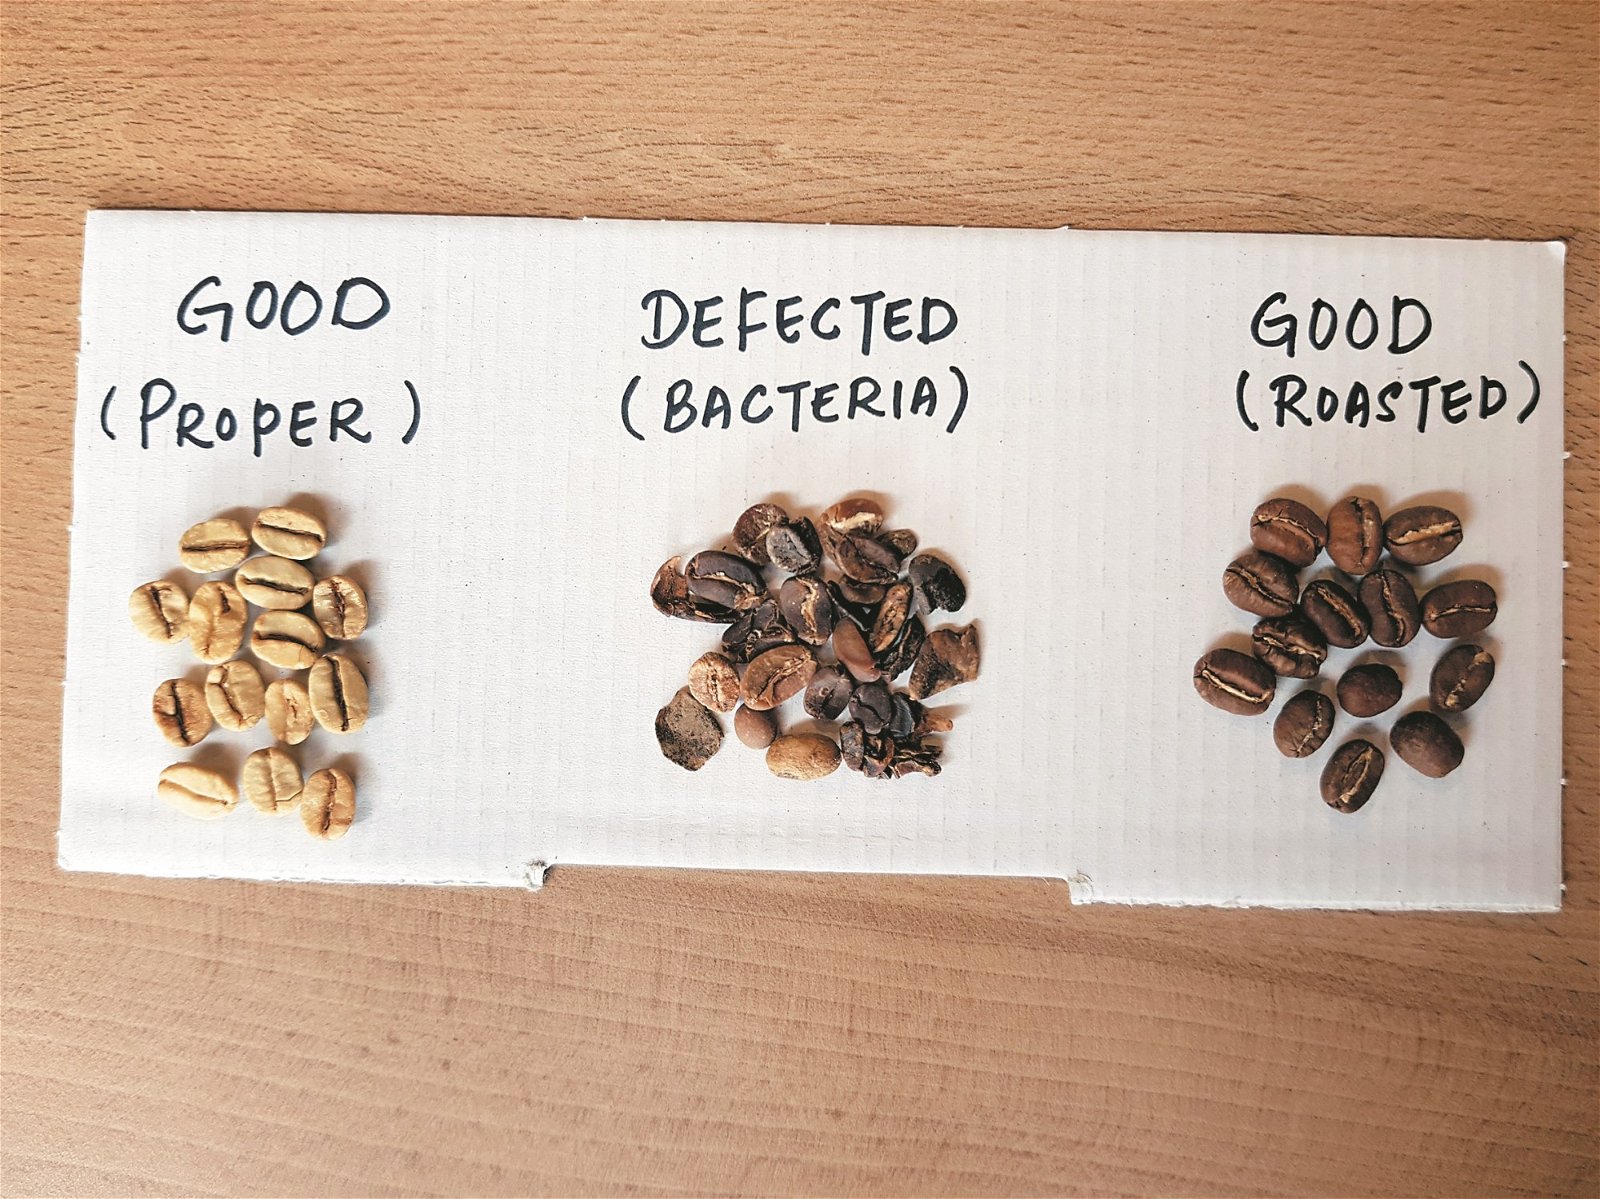 张保伟现场拿出3种不同的咖啡，以此作简单的咖啡豆辨认介绍，他希望这场嘉年华也能达到建立基础咖啡知识的作用。